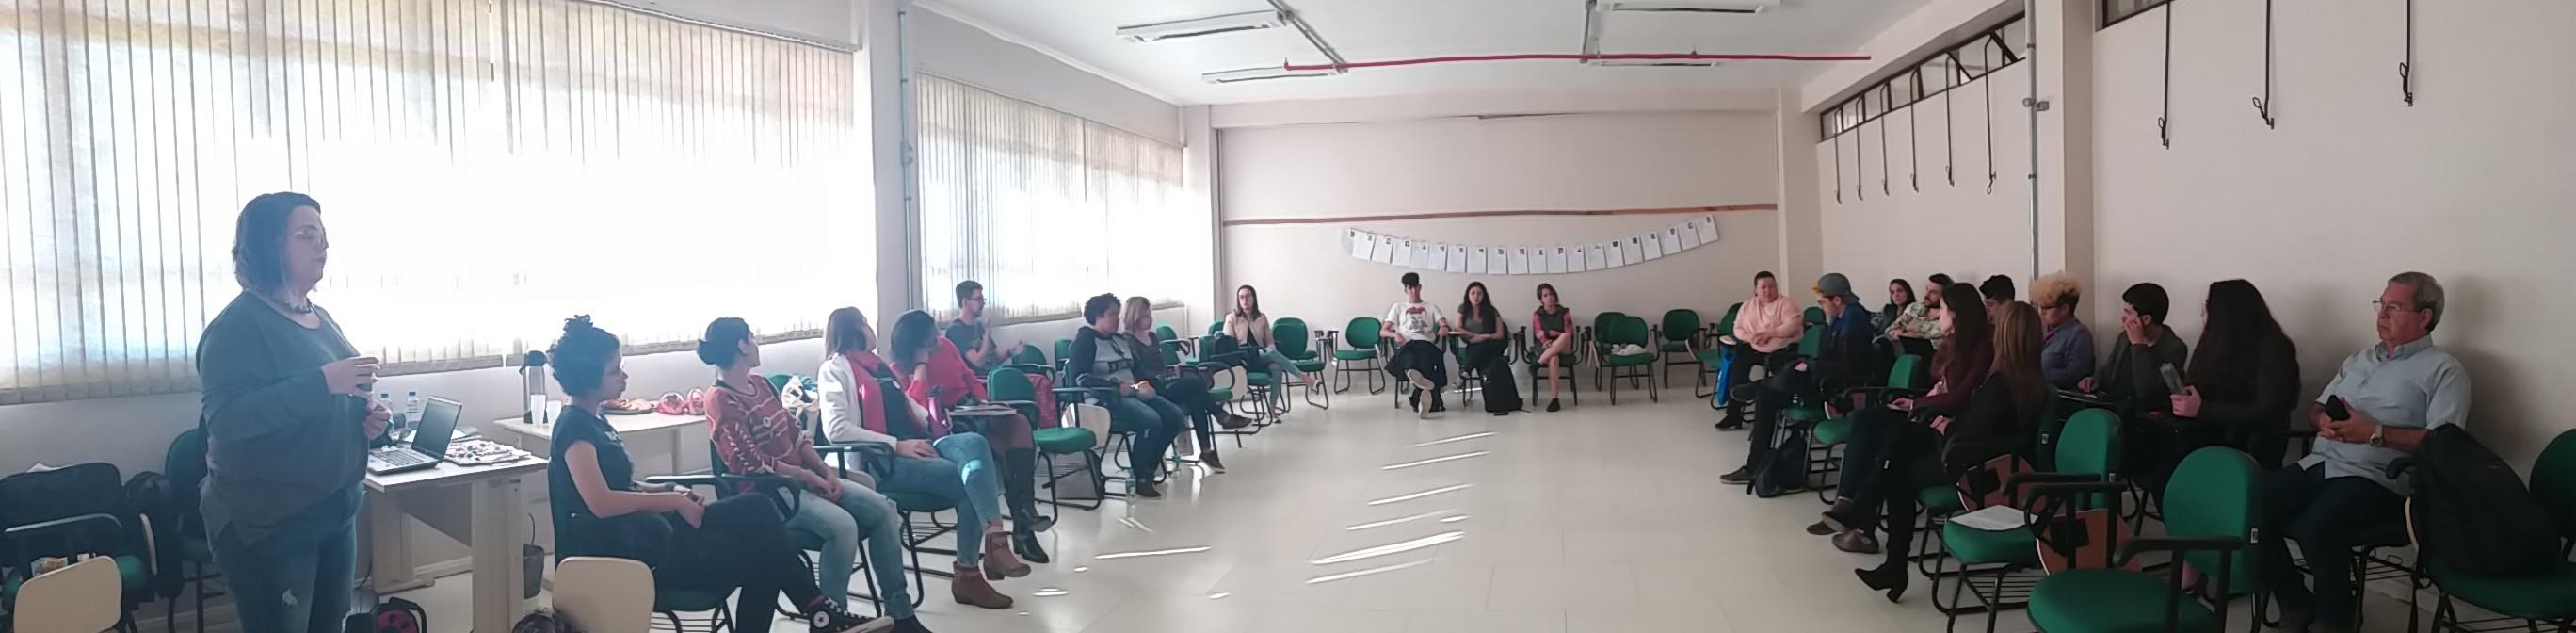 Foto panorâmica de sala com pessoas sentadas organizadas em semicírculo para discussão em grupo